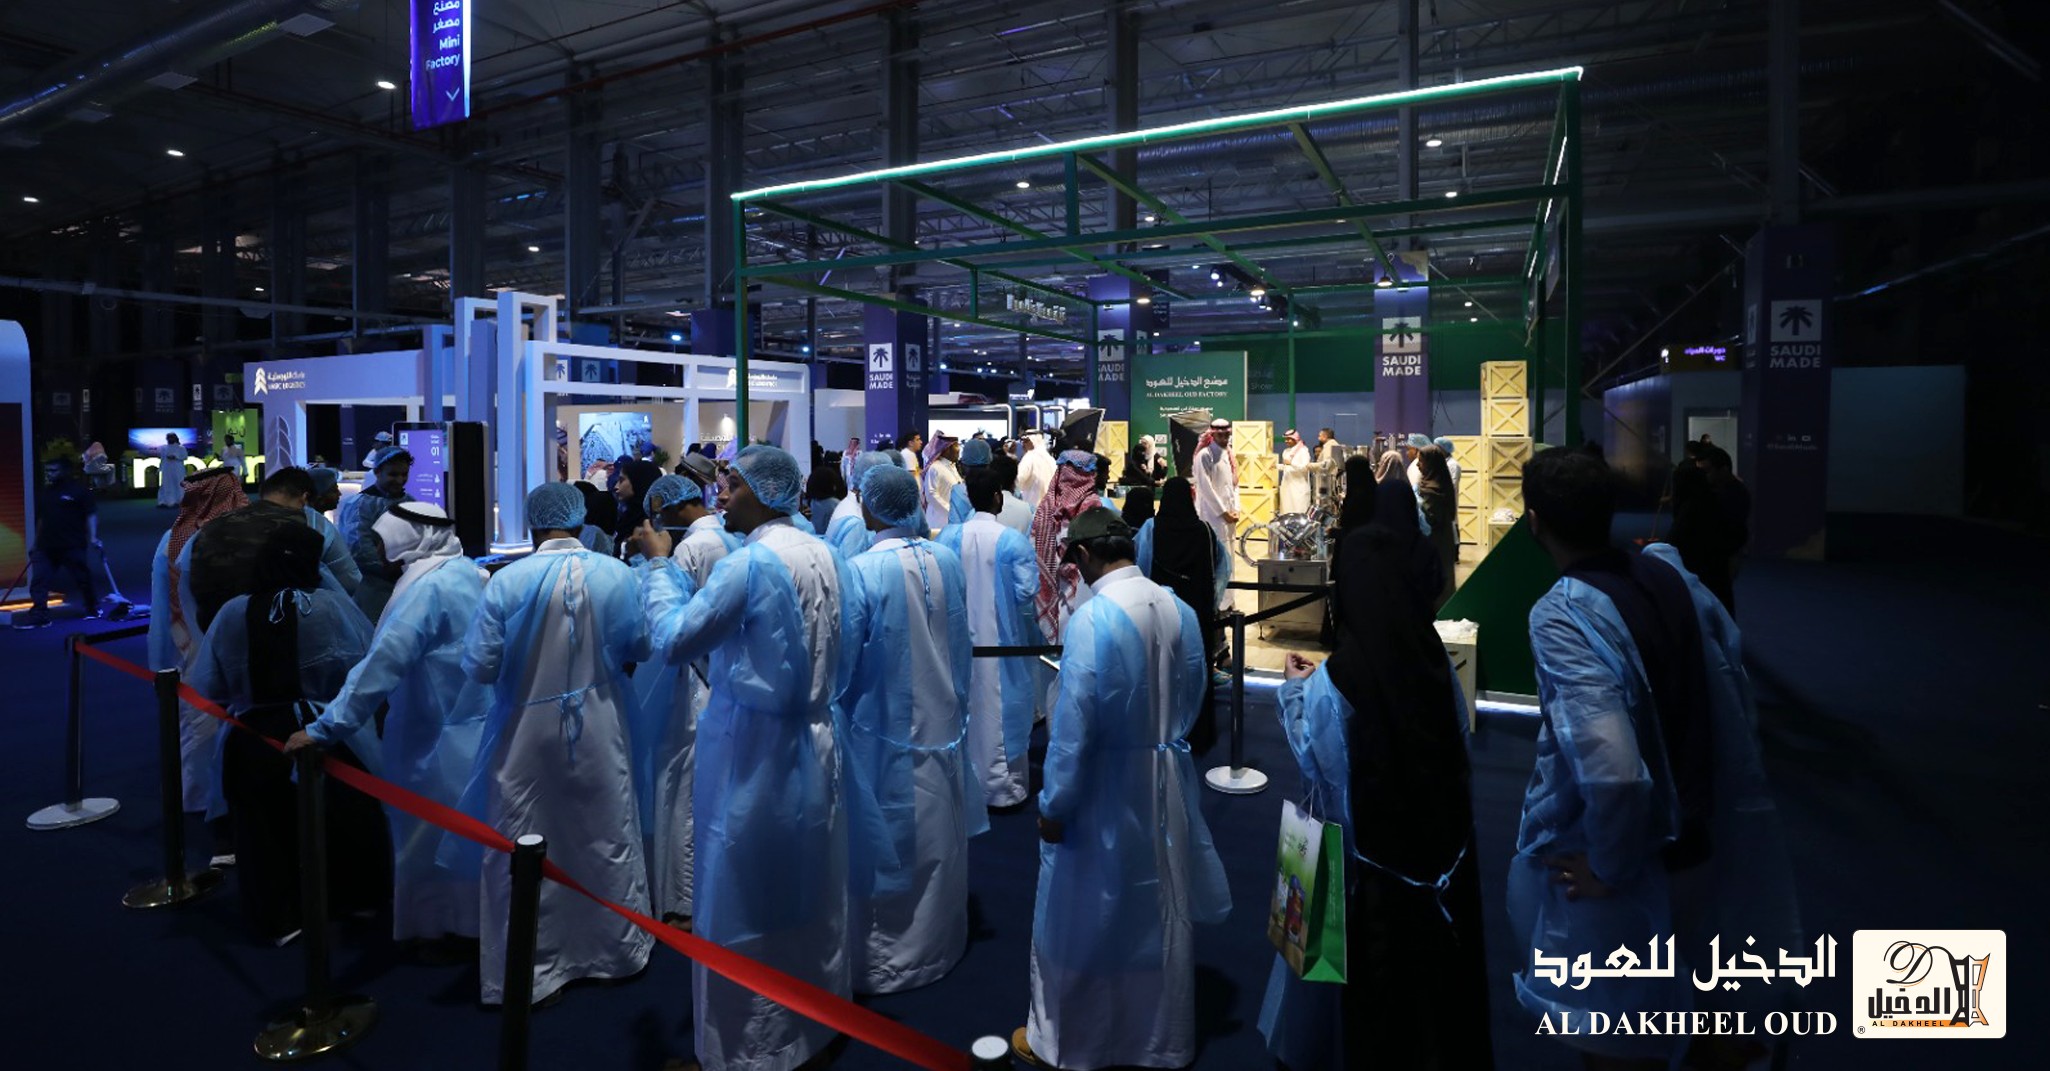 مصنع الدخيل للعود يشارك في معرض "صنع في السعودية" بنسخته الثانية